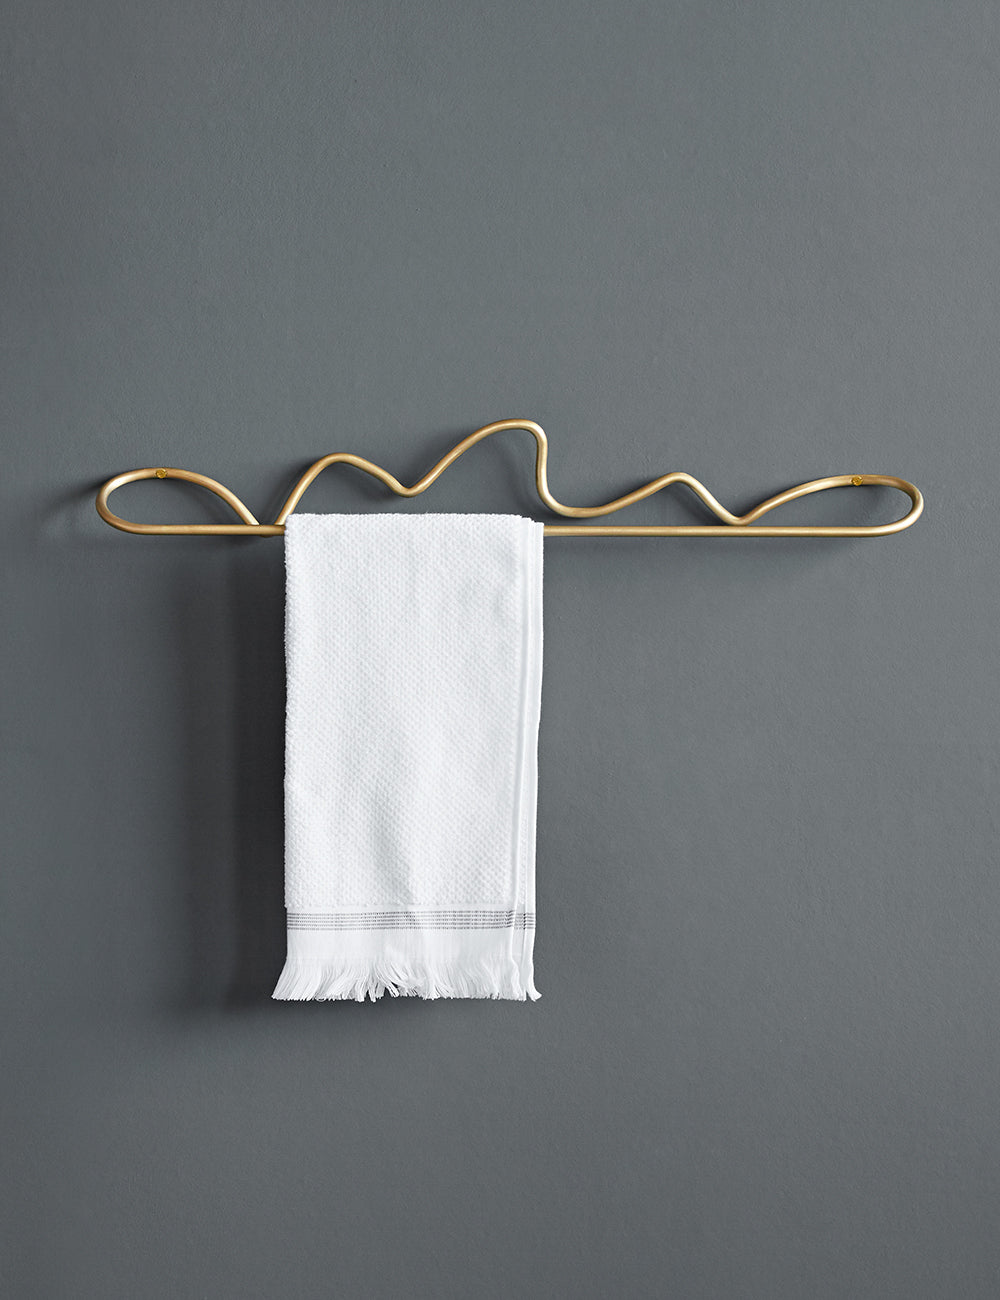 Ferm Living Curvature Brass Towel Hanger